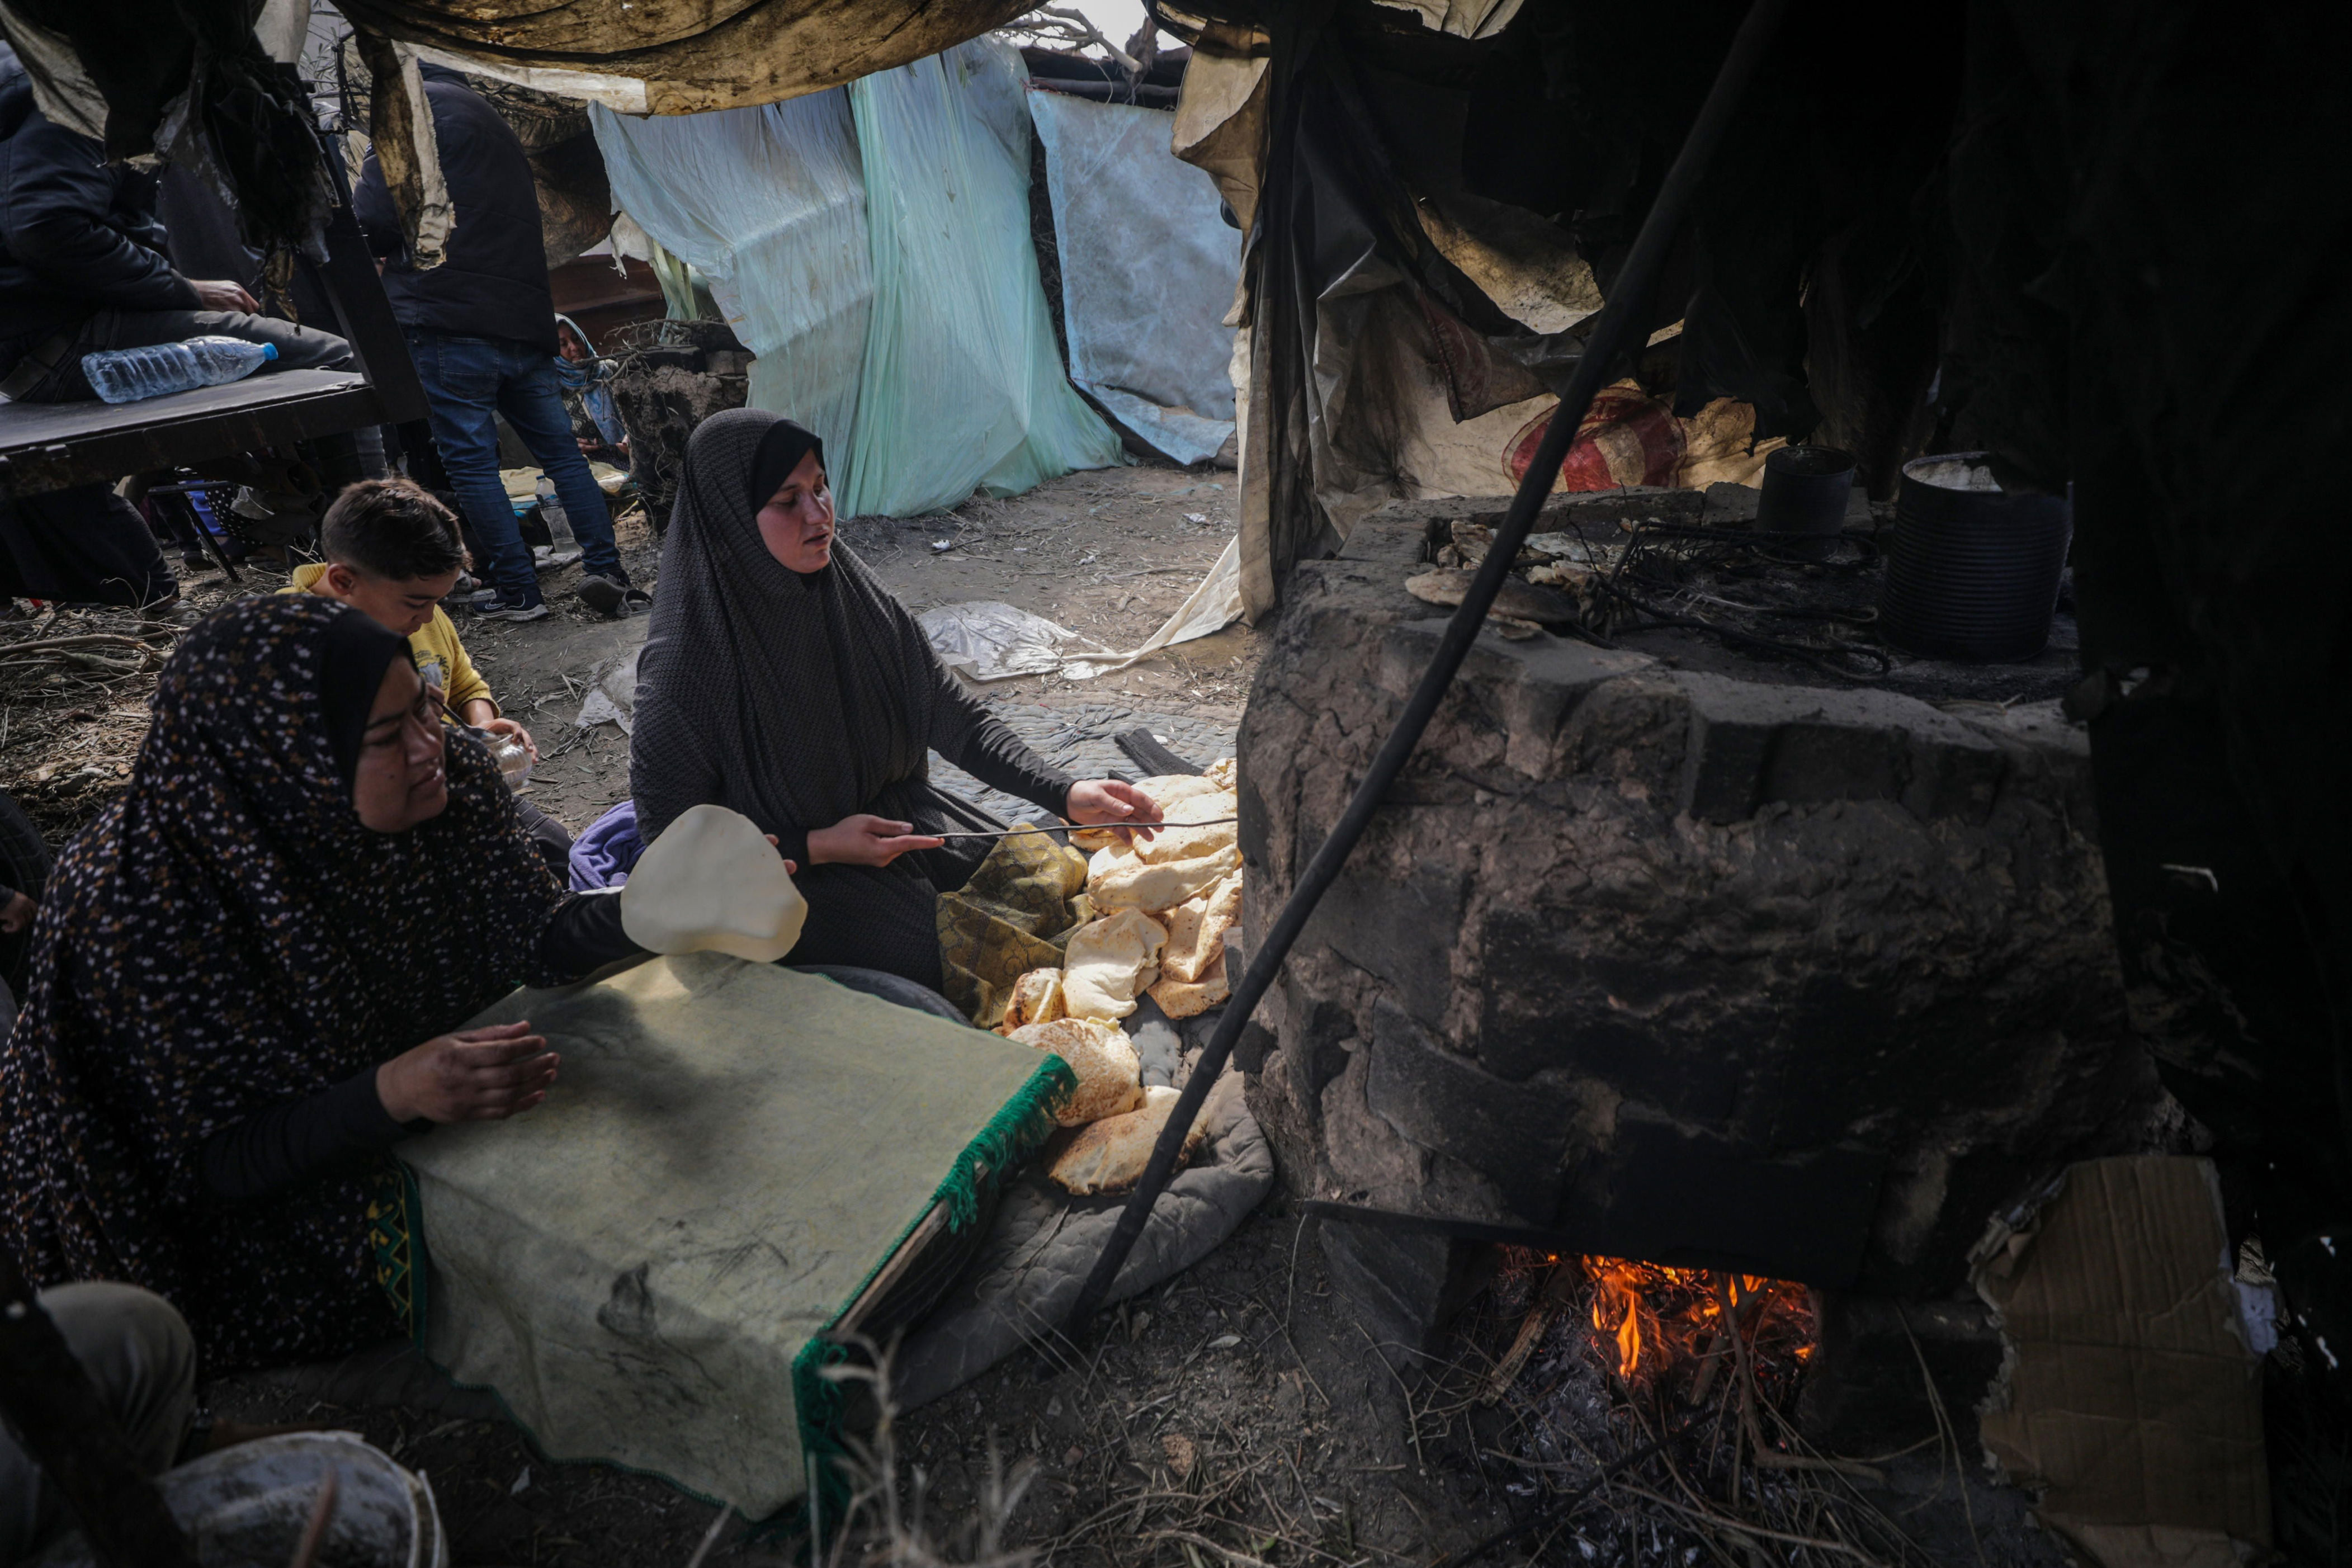 pastillas para cortar la regla, partos en tiendas de campaña y la proeza de encontrar un baño: así viven las gazatíes desplazadas